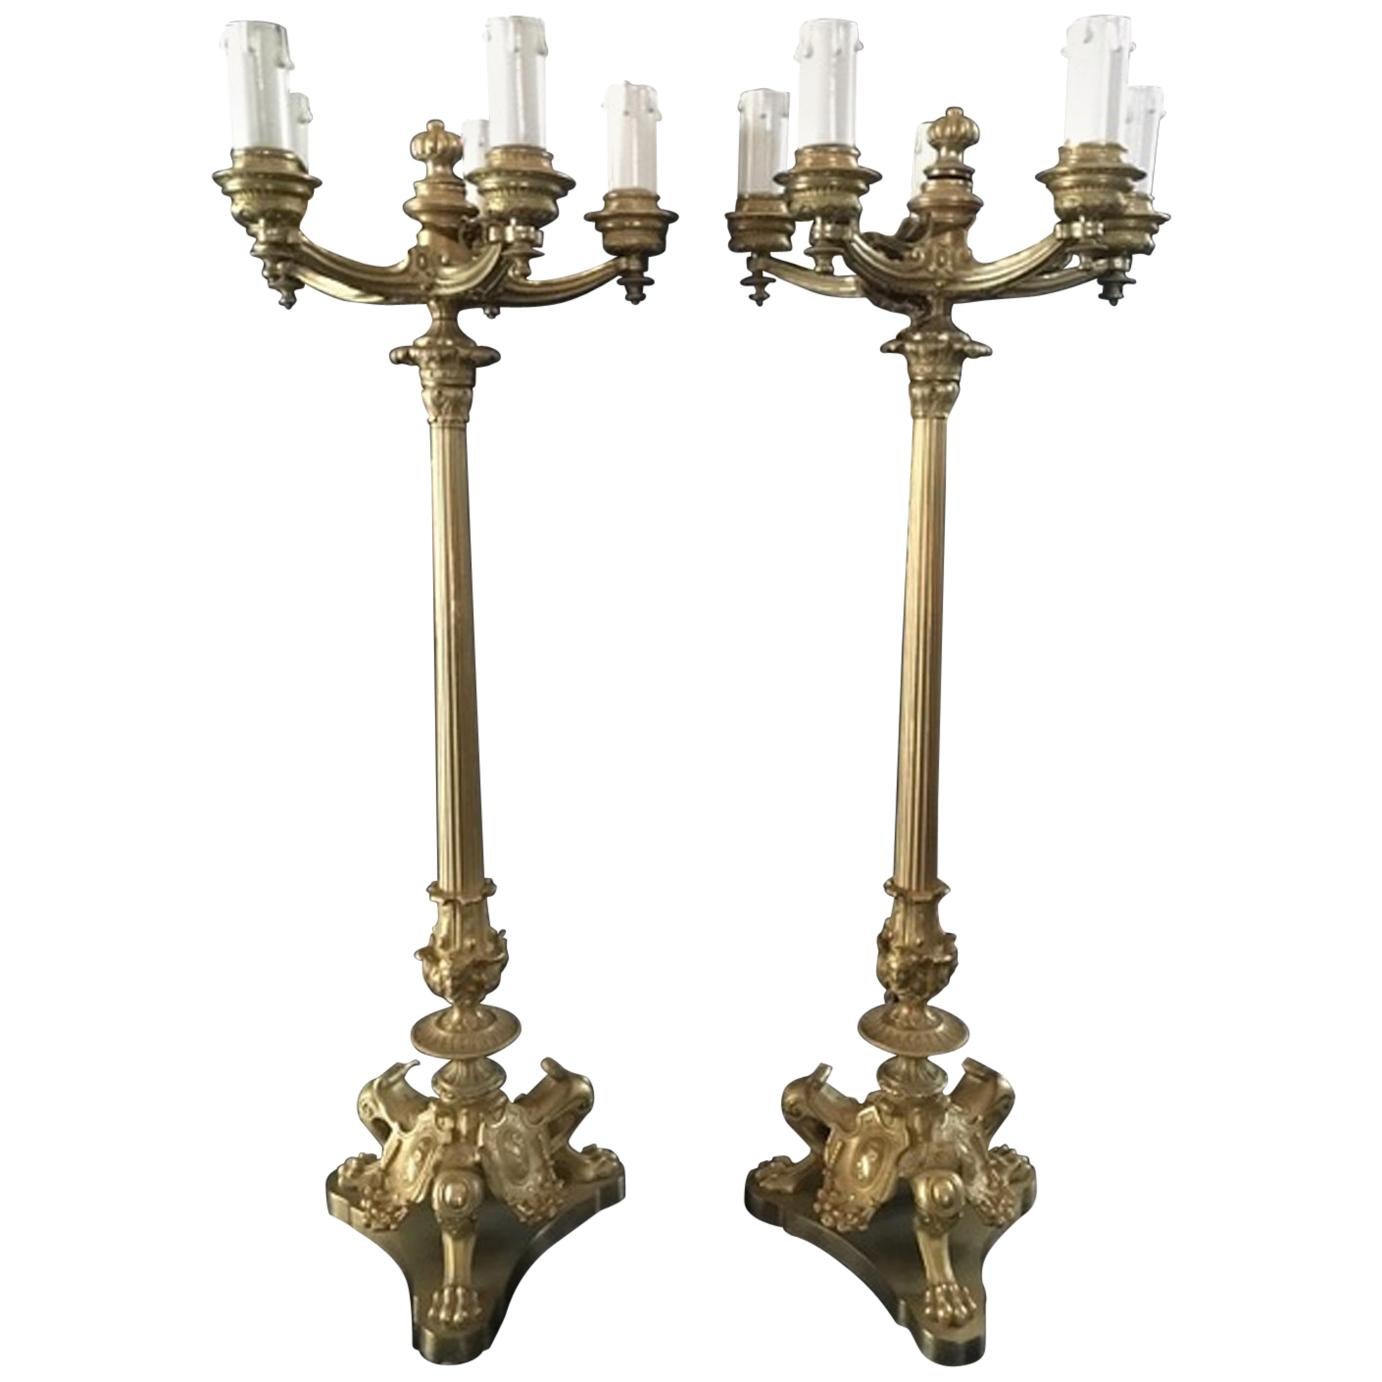 How do you shine brass candlesticks?